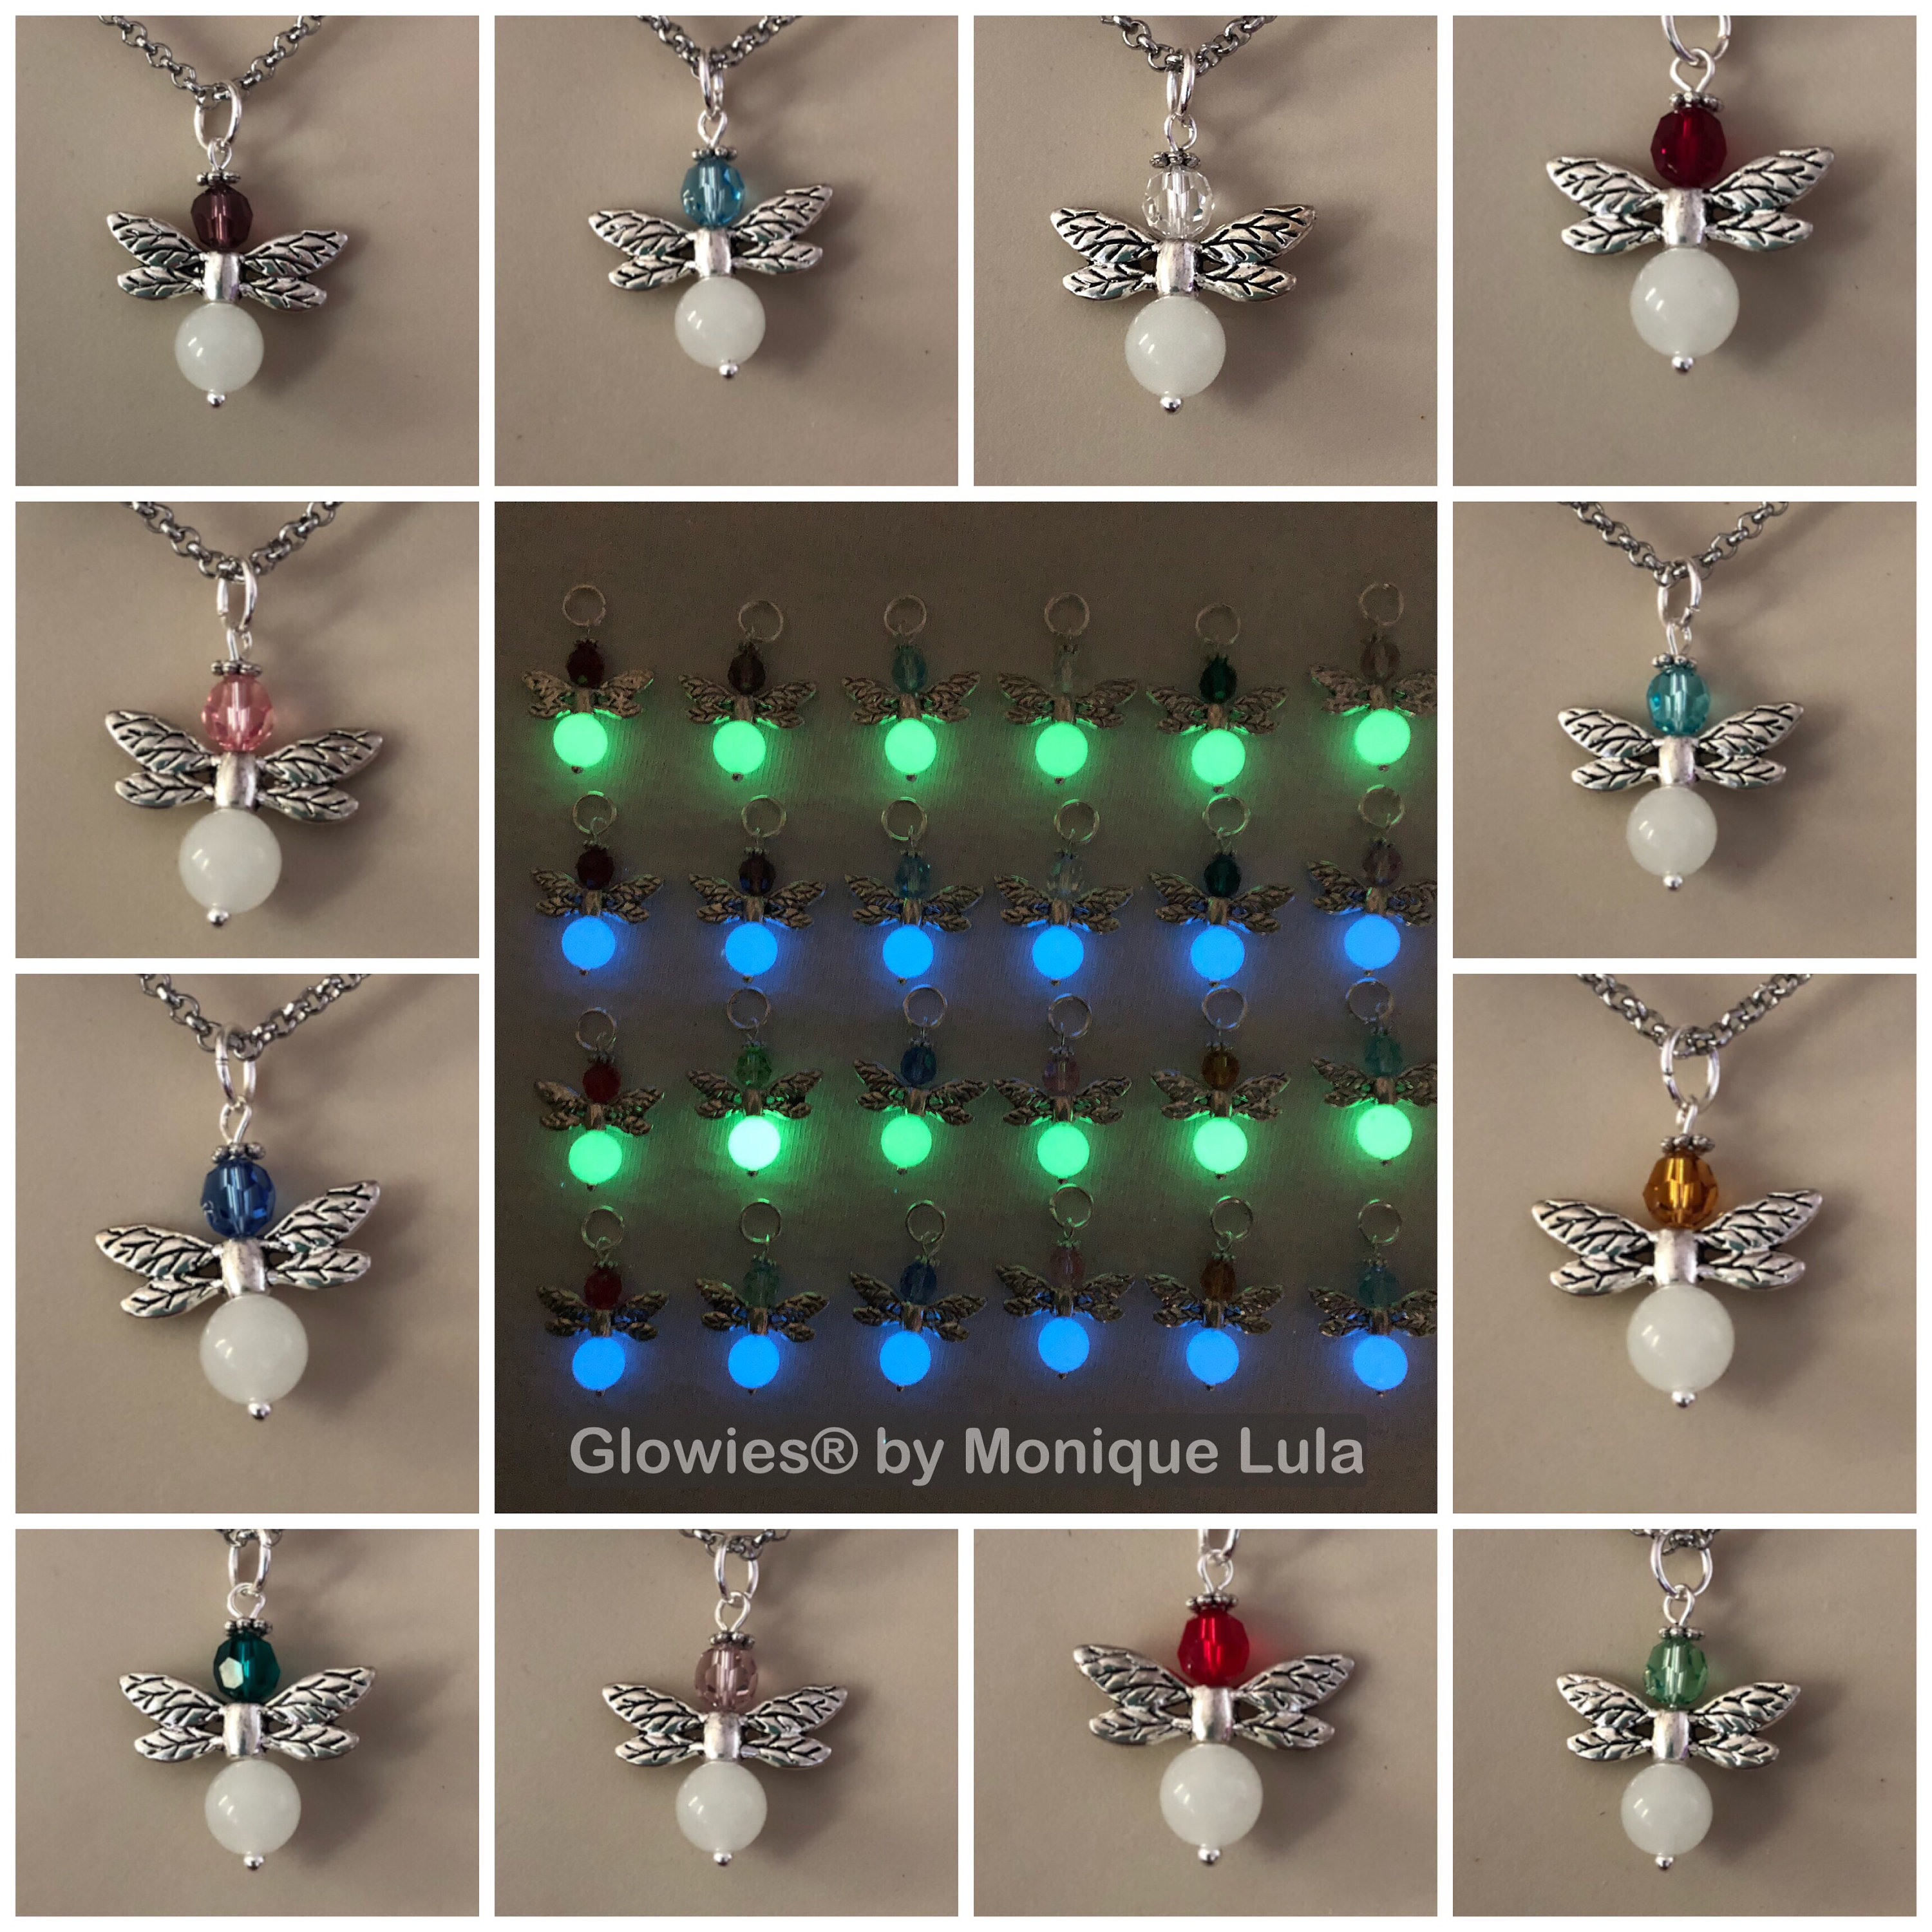 Glowies Glow Jewelry Art & Decor - Dragonfly Lula Heart Glow in the dark  necklace